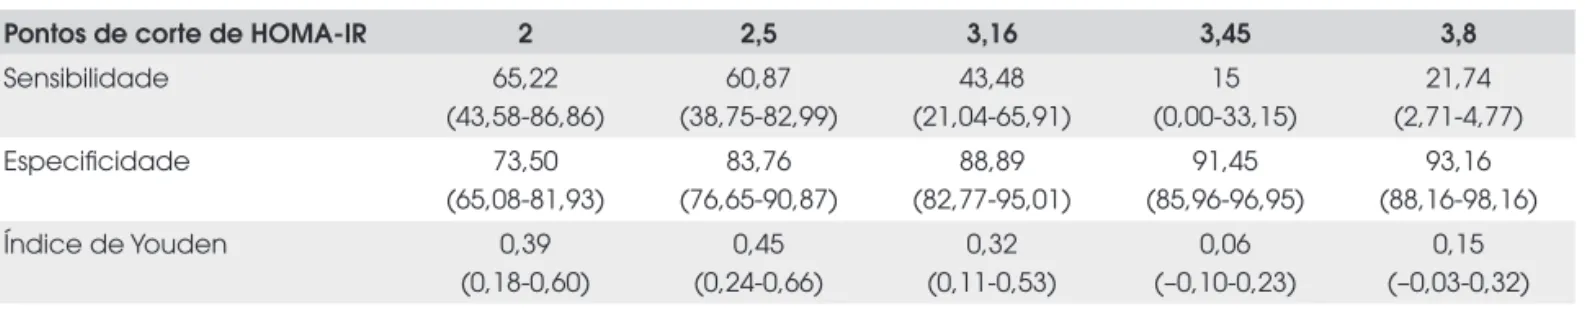 Tabela 2.  Sensibilidade, especifi cidade e índice de Youden (com seus correspondentes intervalos de confi ança) obtidos para  cada um dos pontos de corte do índice HOMA-IR estudados, tomando como desfecho a presença de síndrome metabólica.